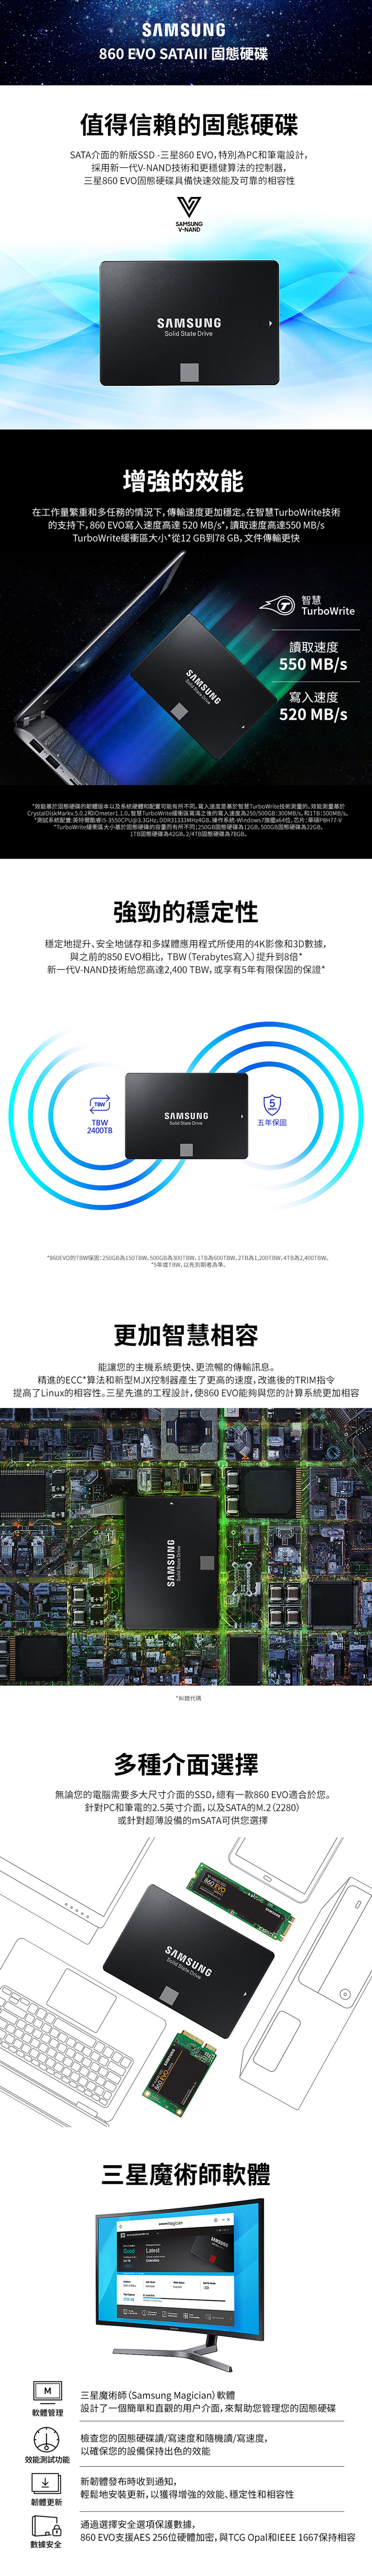 Samsung 860 EVO 500GB SSD固態硬碟